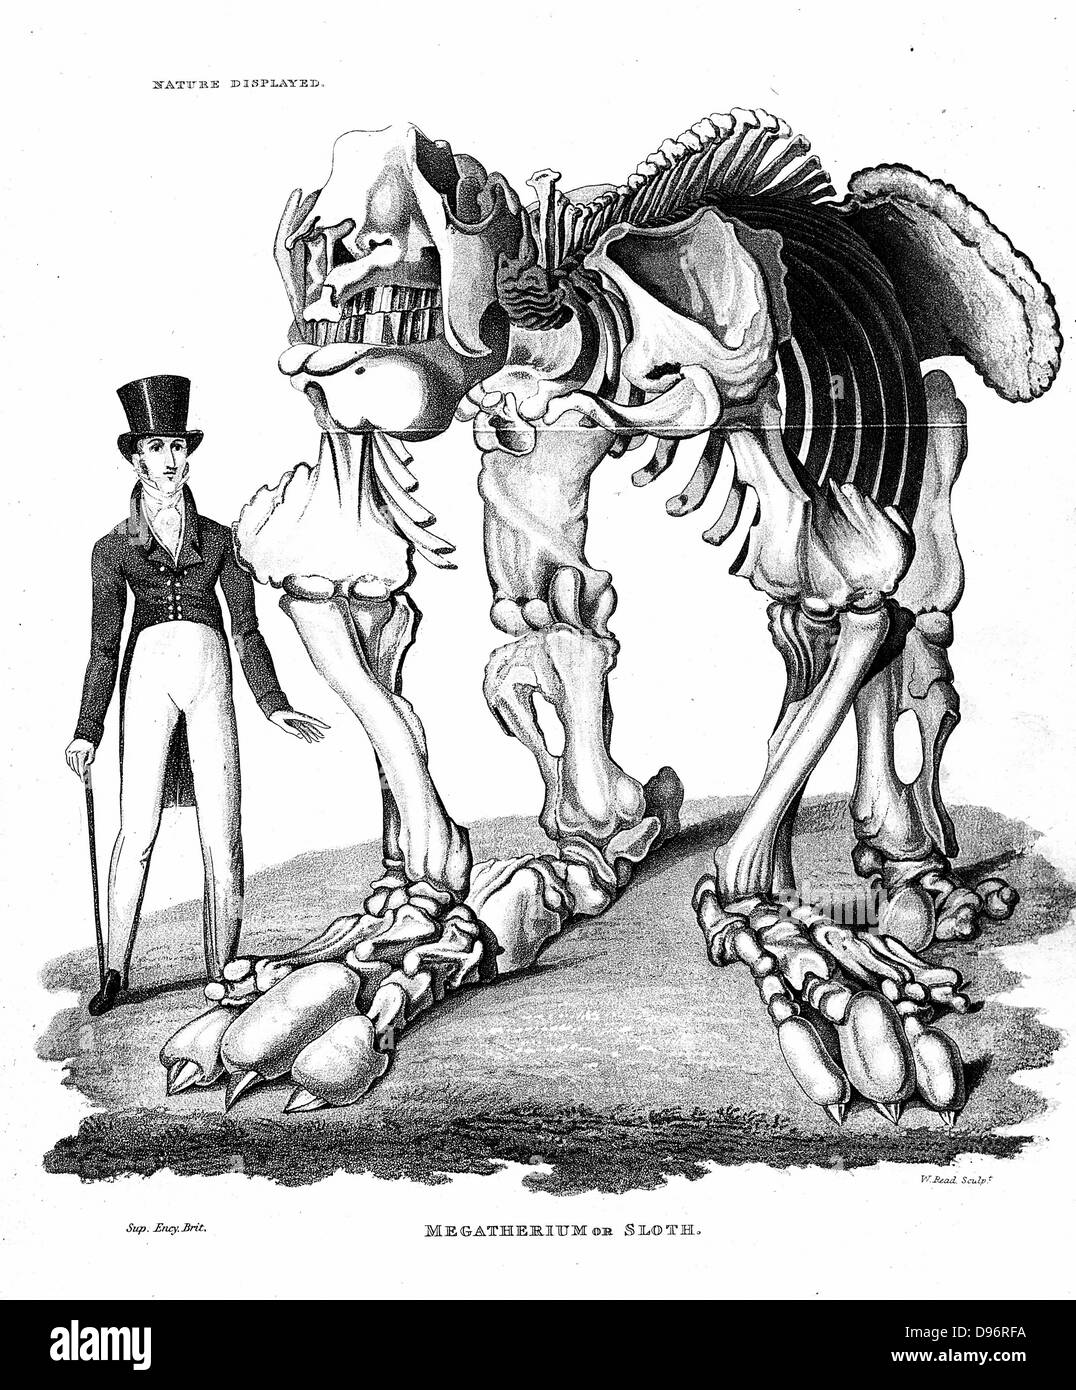 Skelett von Megatherium, erloschenen giant Ground Sloth von Südamerika: Pflanzenfresser. Dieses Muster in Paraguay c 1796 gefunden. Lithographie veröffentlicht London 1823 Stockfoto